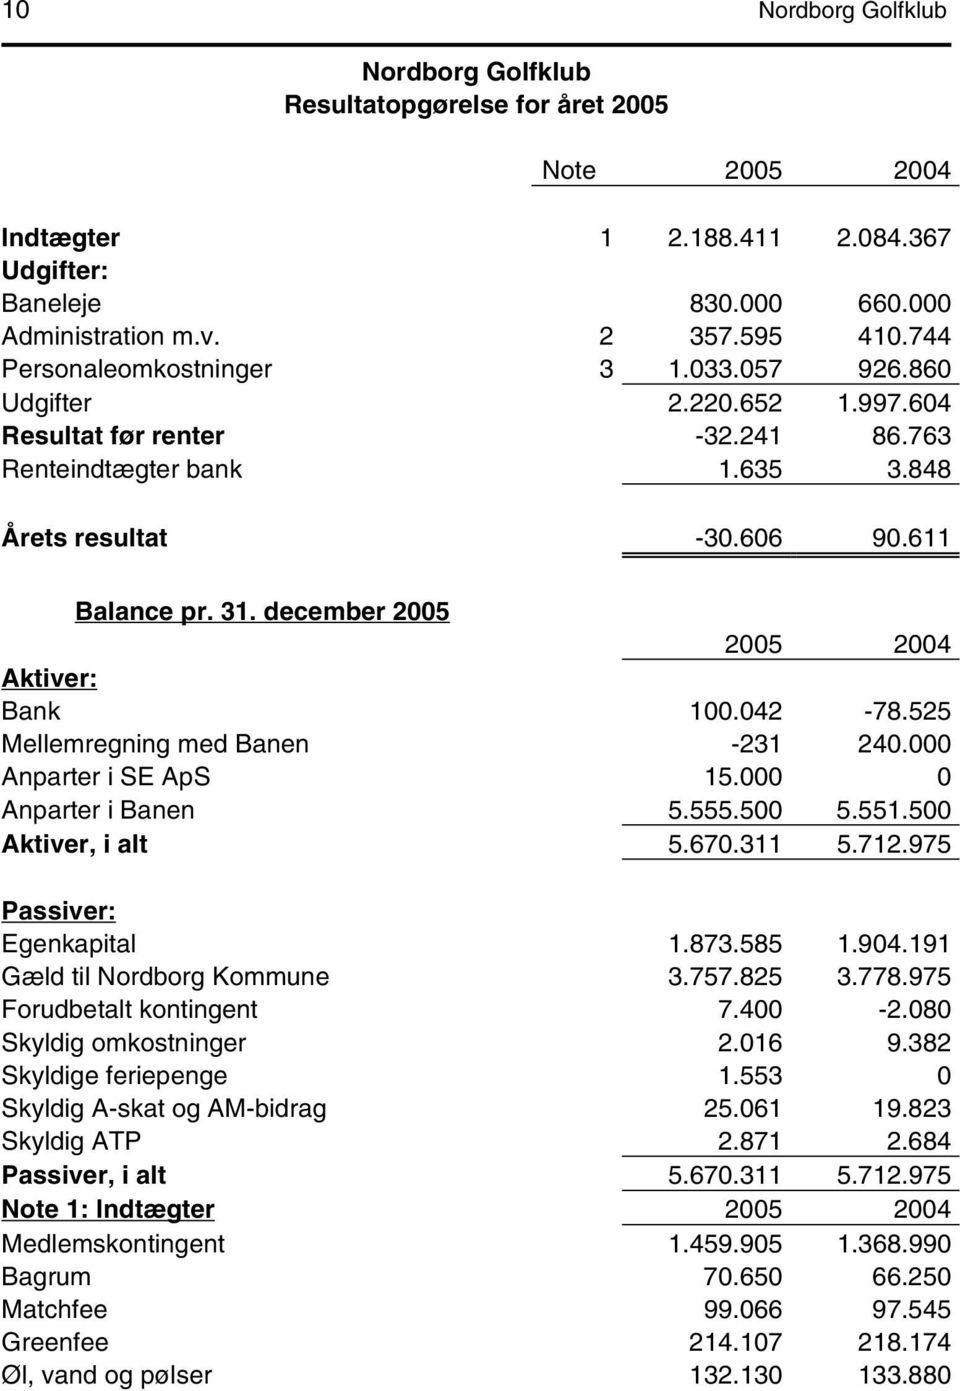 december 2005 2005 2004 Aktiver: Bank 100.042-78.525 Mellemregning med Banen -231 240.000 Anparter i SE ApS 15.000 0 Anparter i Banen 5.555.500 5.551.500 Aktiver, i alt 5.670.311 5.712.